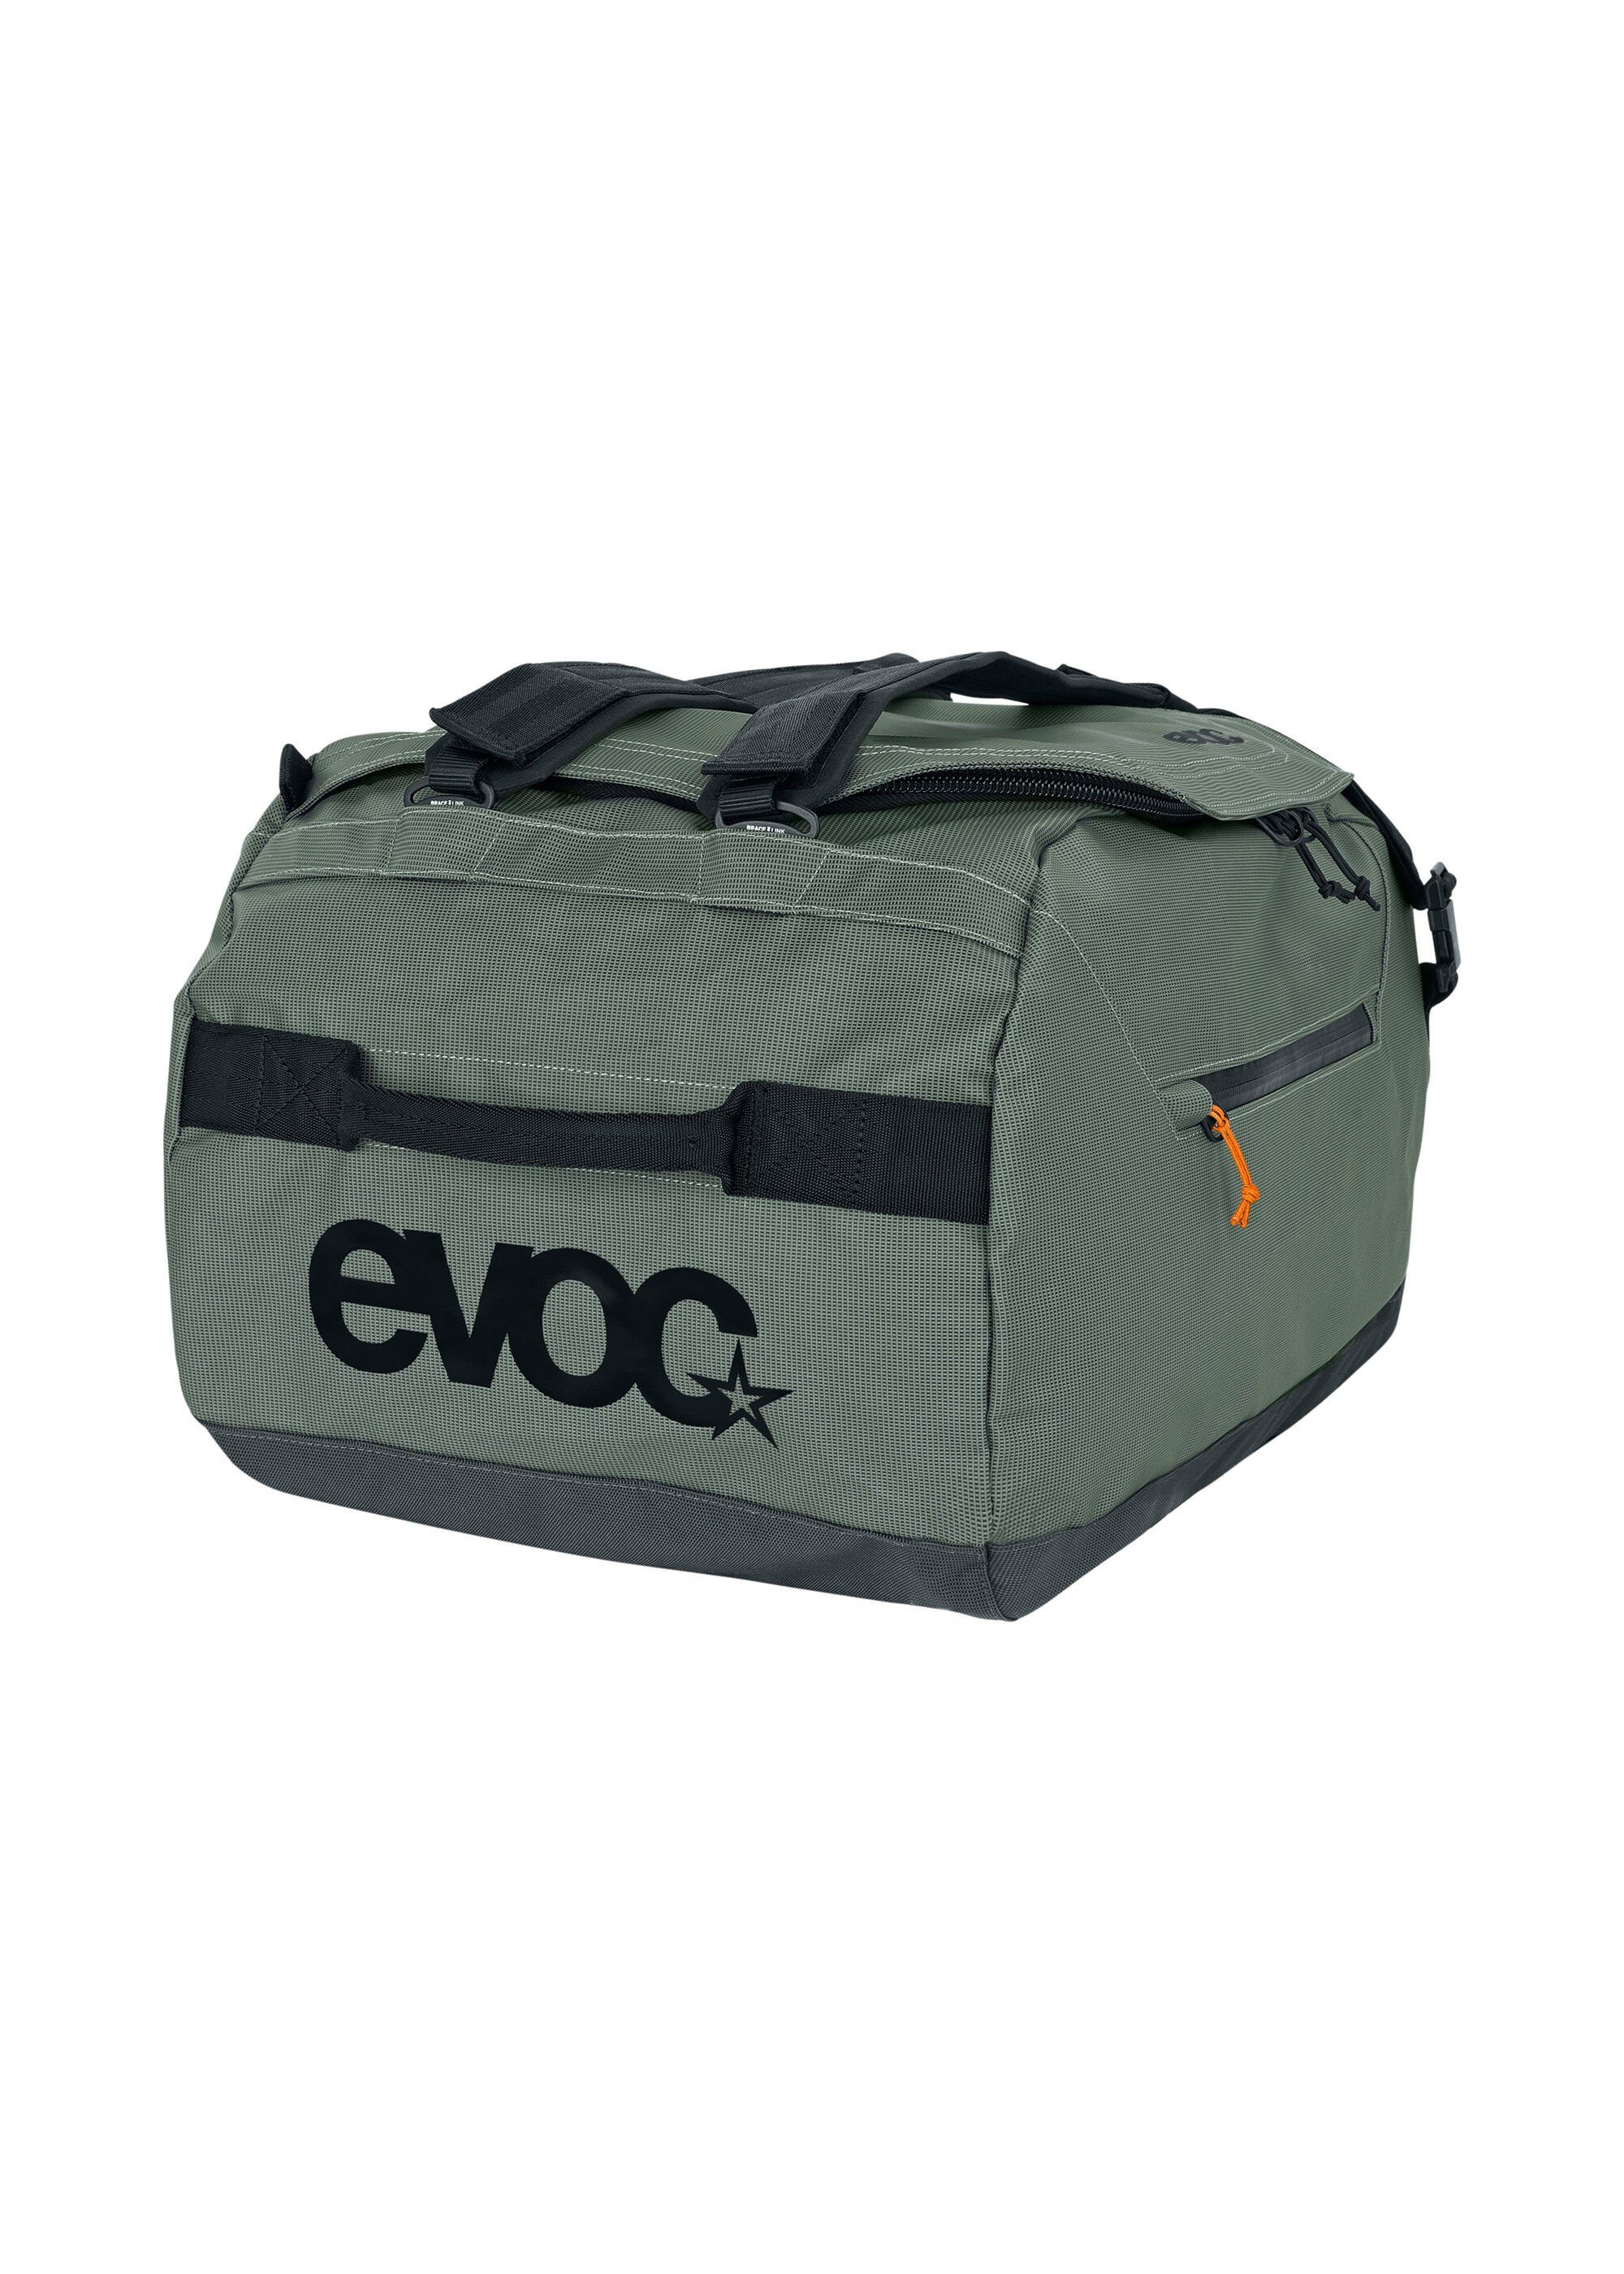 EVOC Reisetasche, aus wasserresistentem Material grün